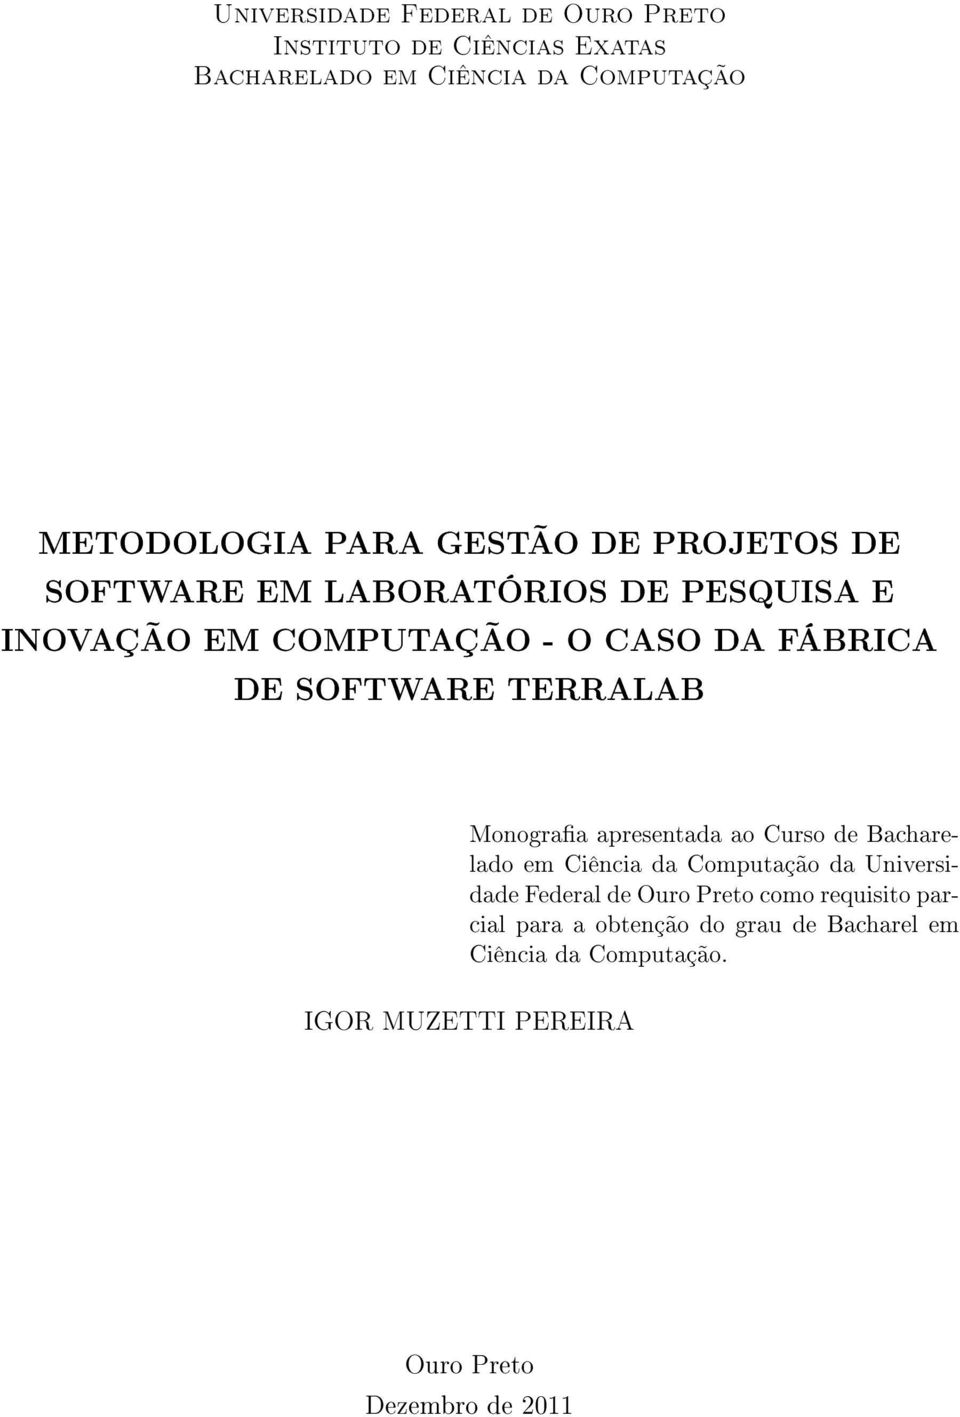 TERRALAB Monograa apresentada ao Curso de Bacharelado em Ciência da Computação da Universidade Federal de Ouro Preto